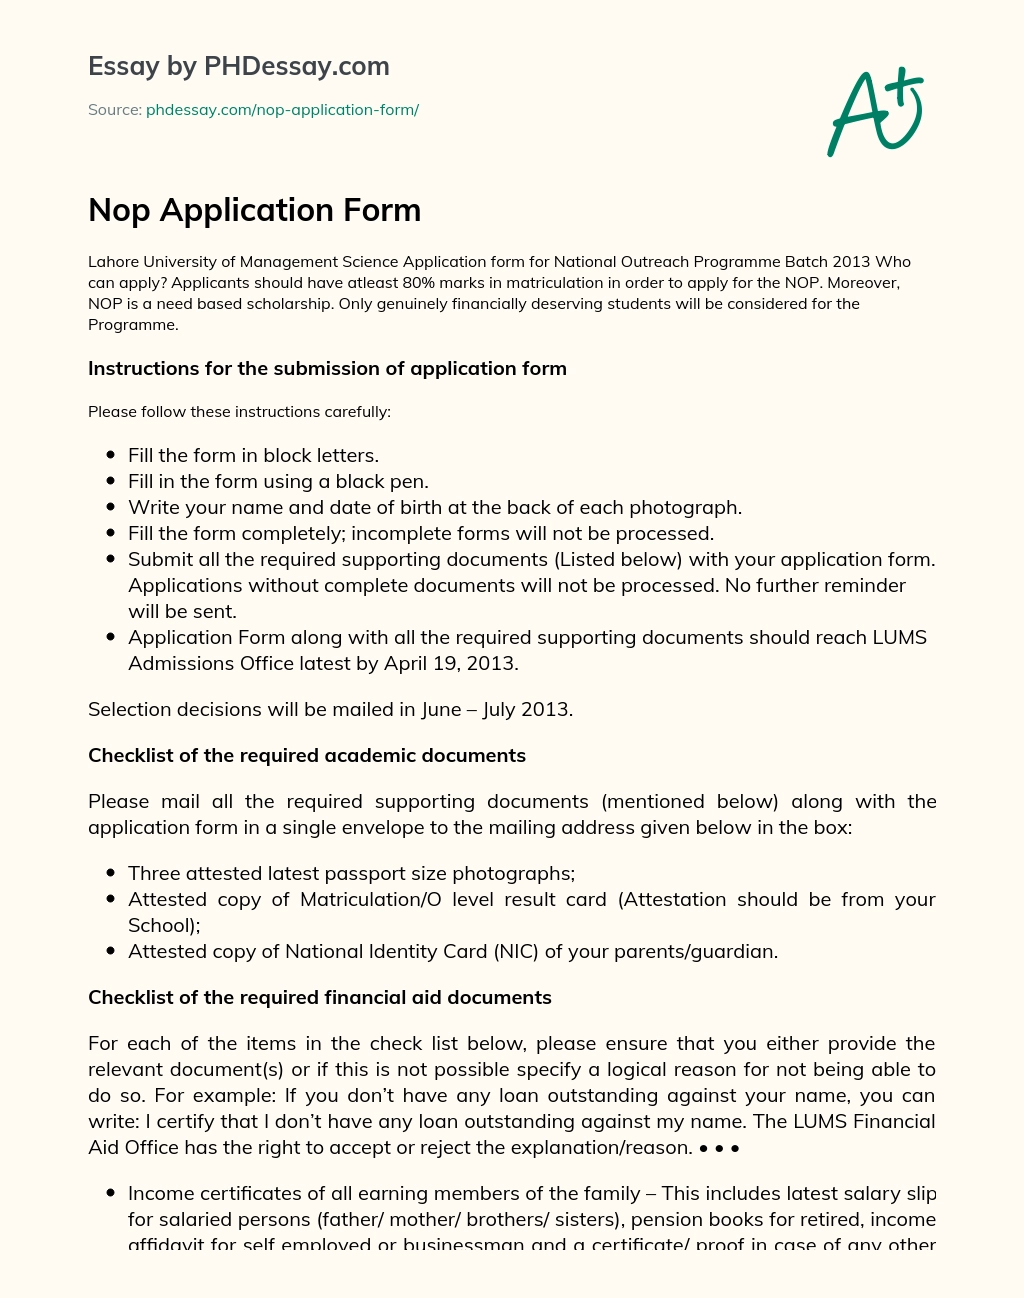 Nop Application Form essay